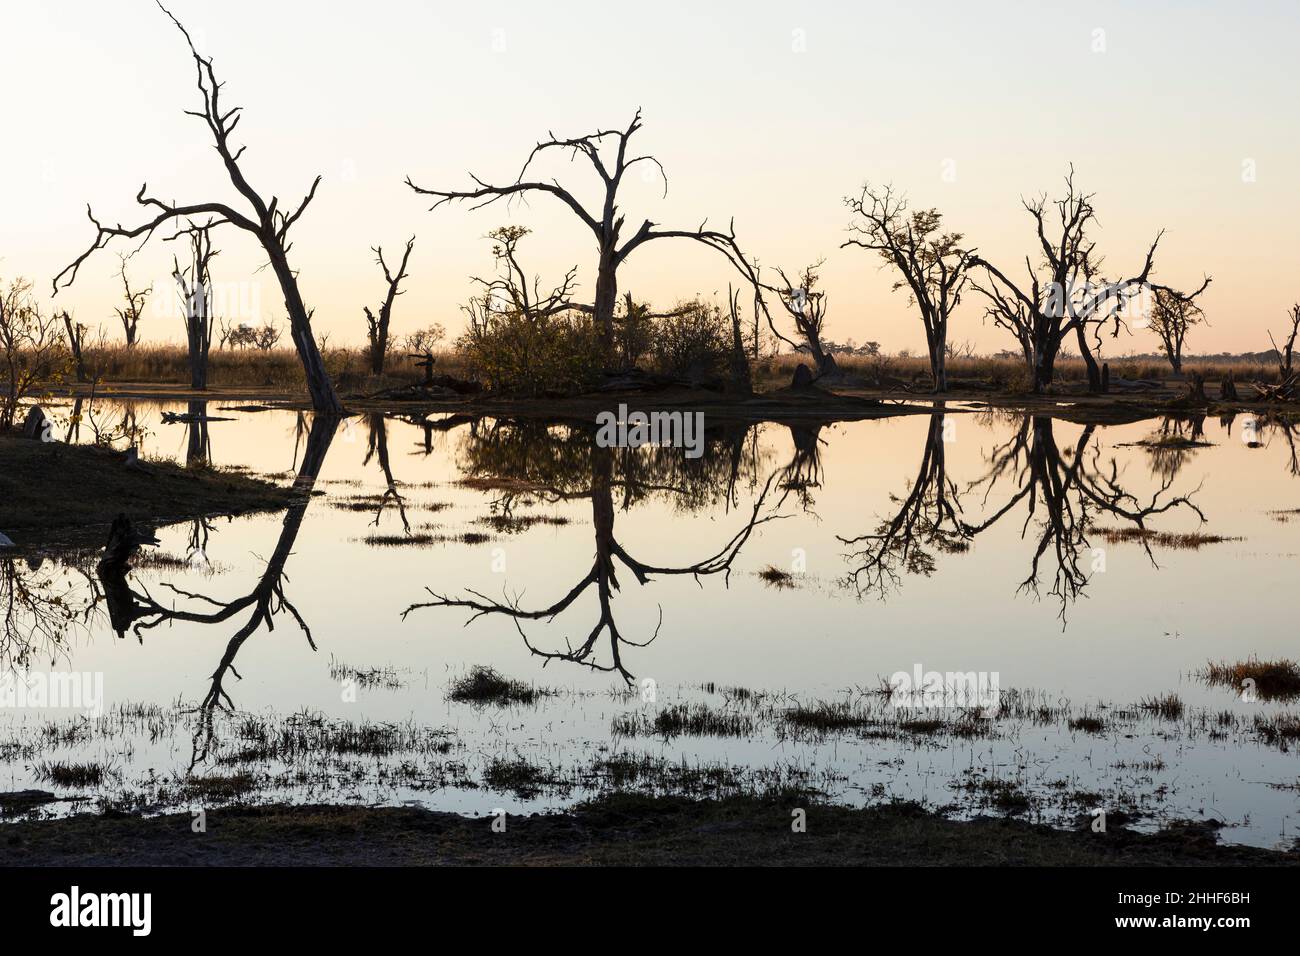 Lever du soleil sur l'eau, silhouettes et réflexions à la surface de l'eau, delta d'Okavango Banque D'Images